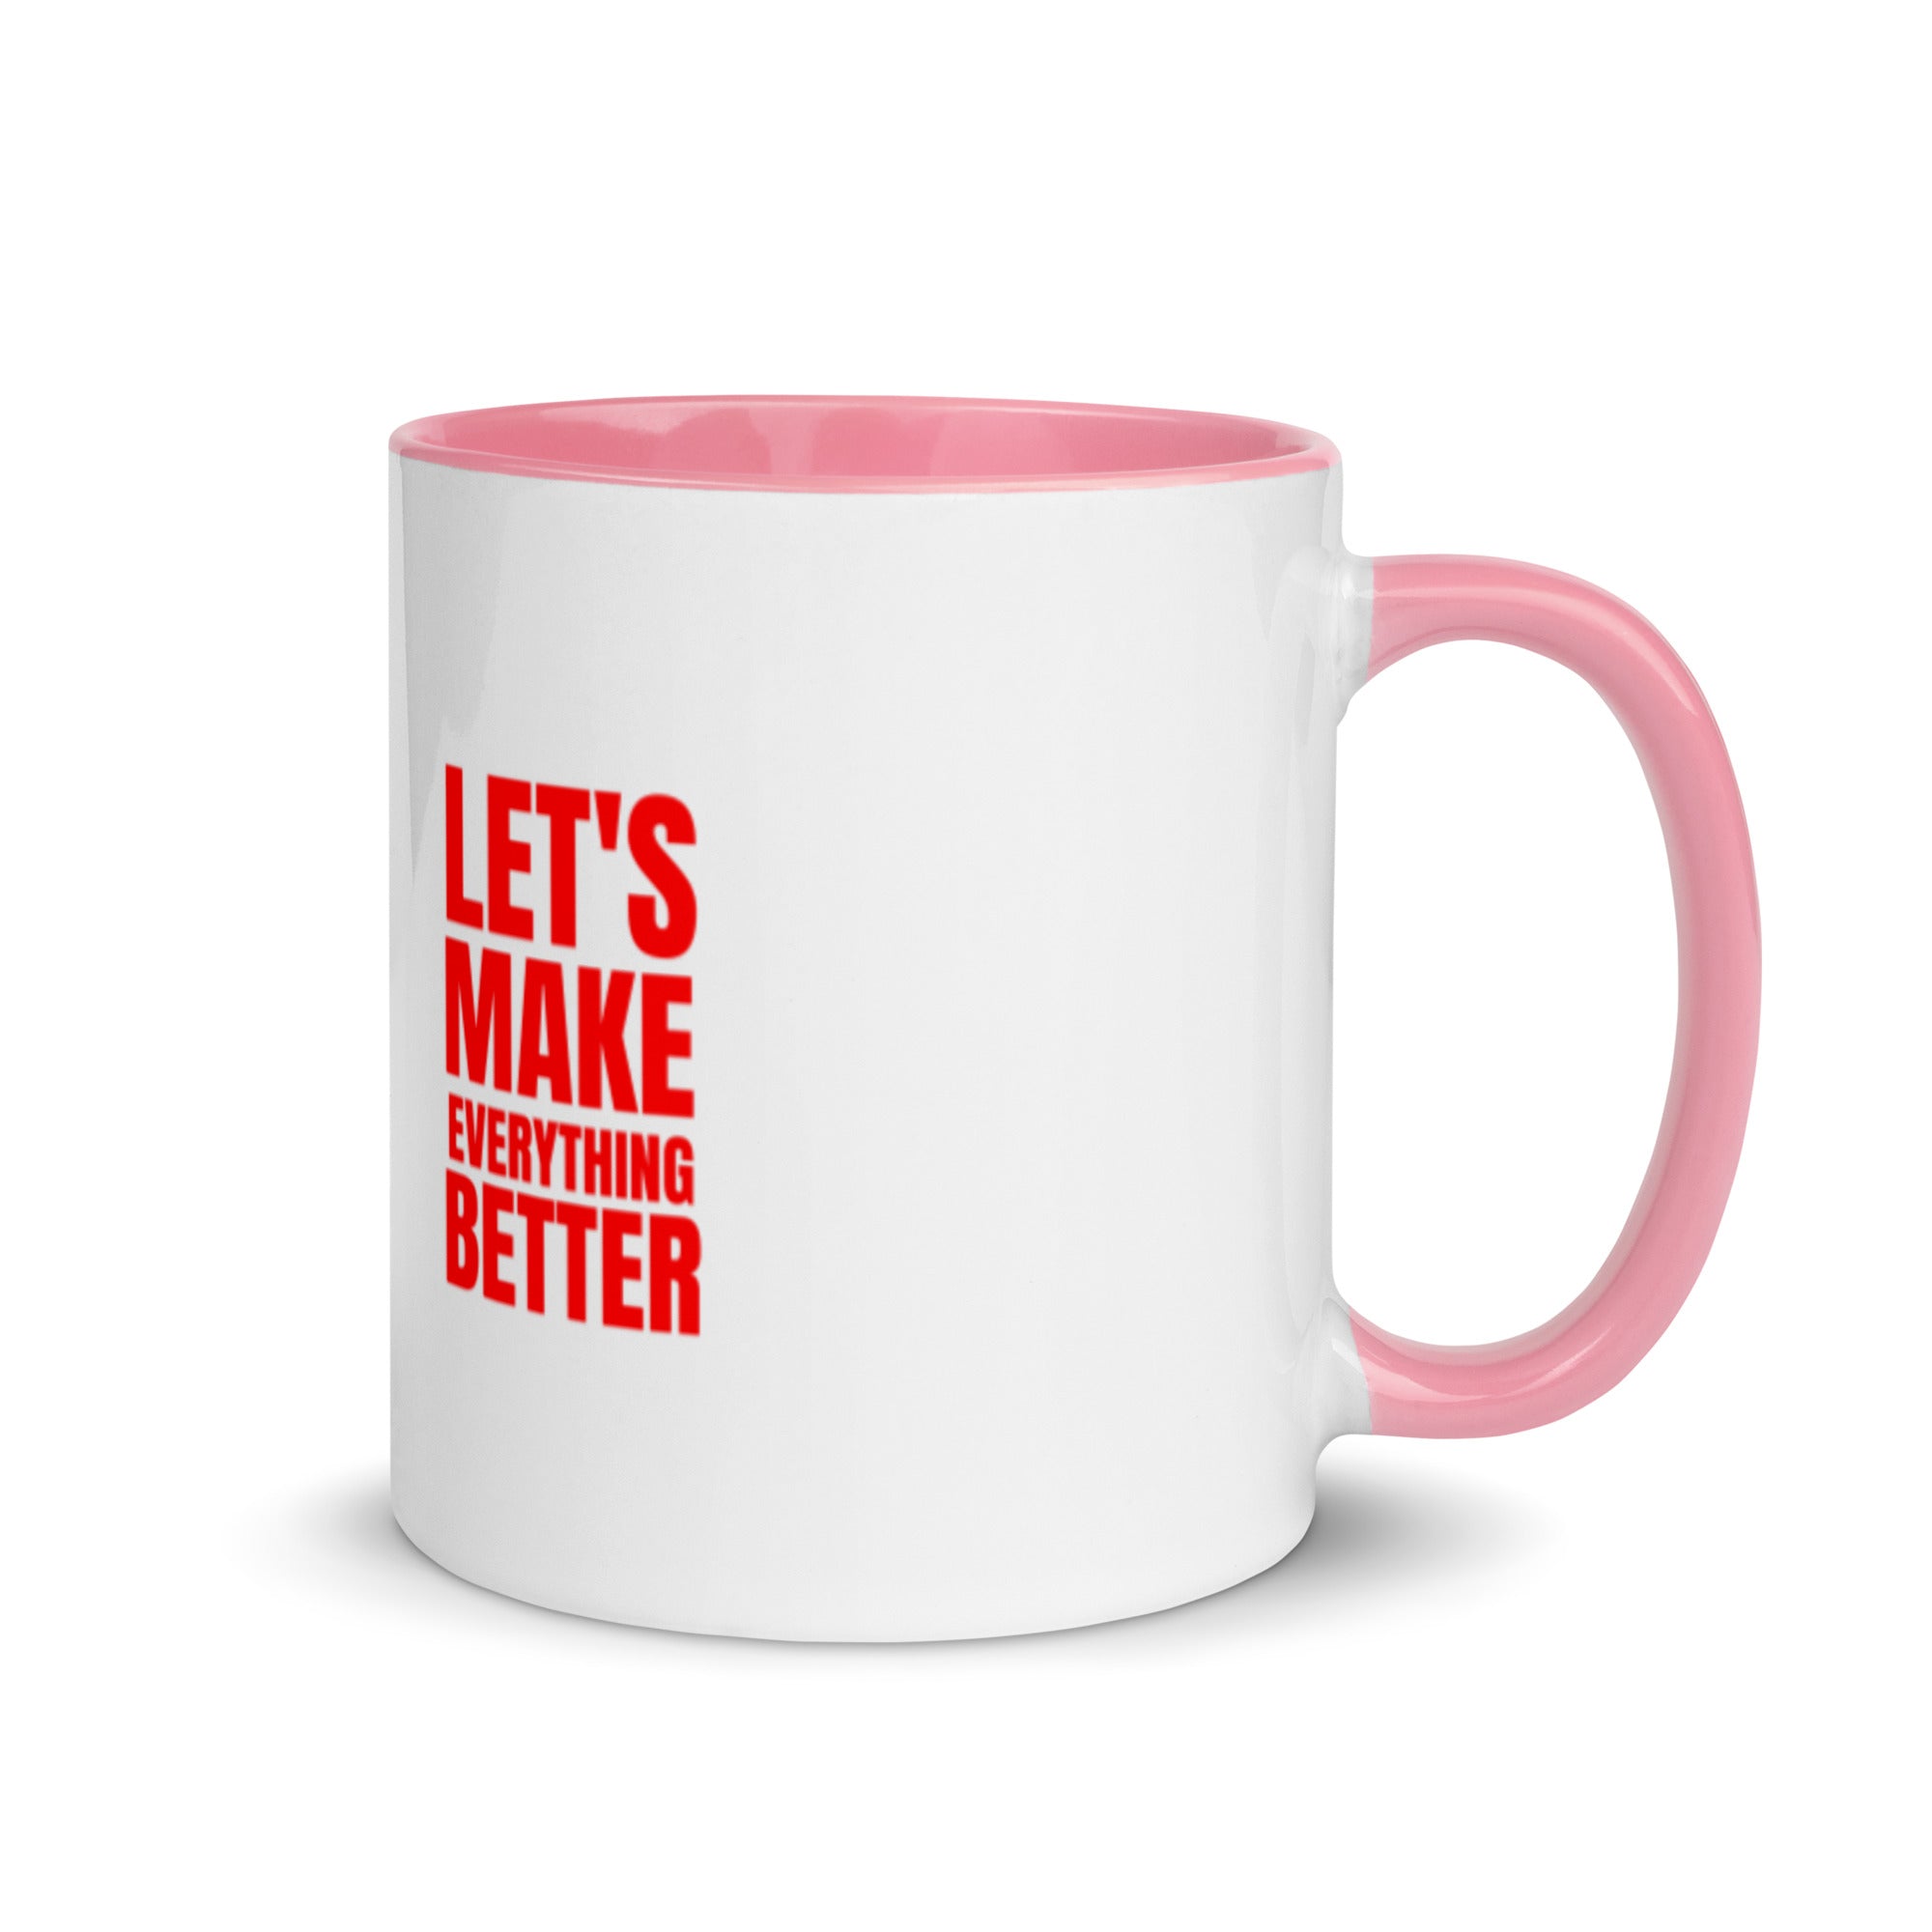 Lets Make Everything Better - Mug with Color Inside